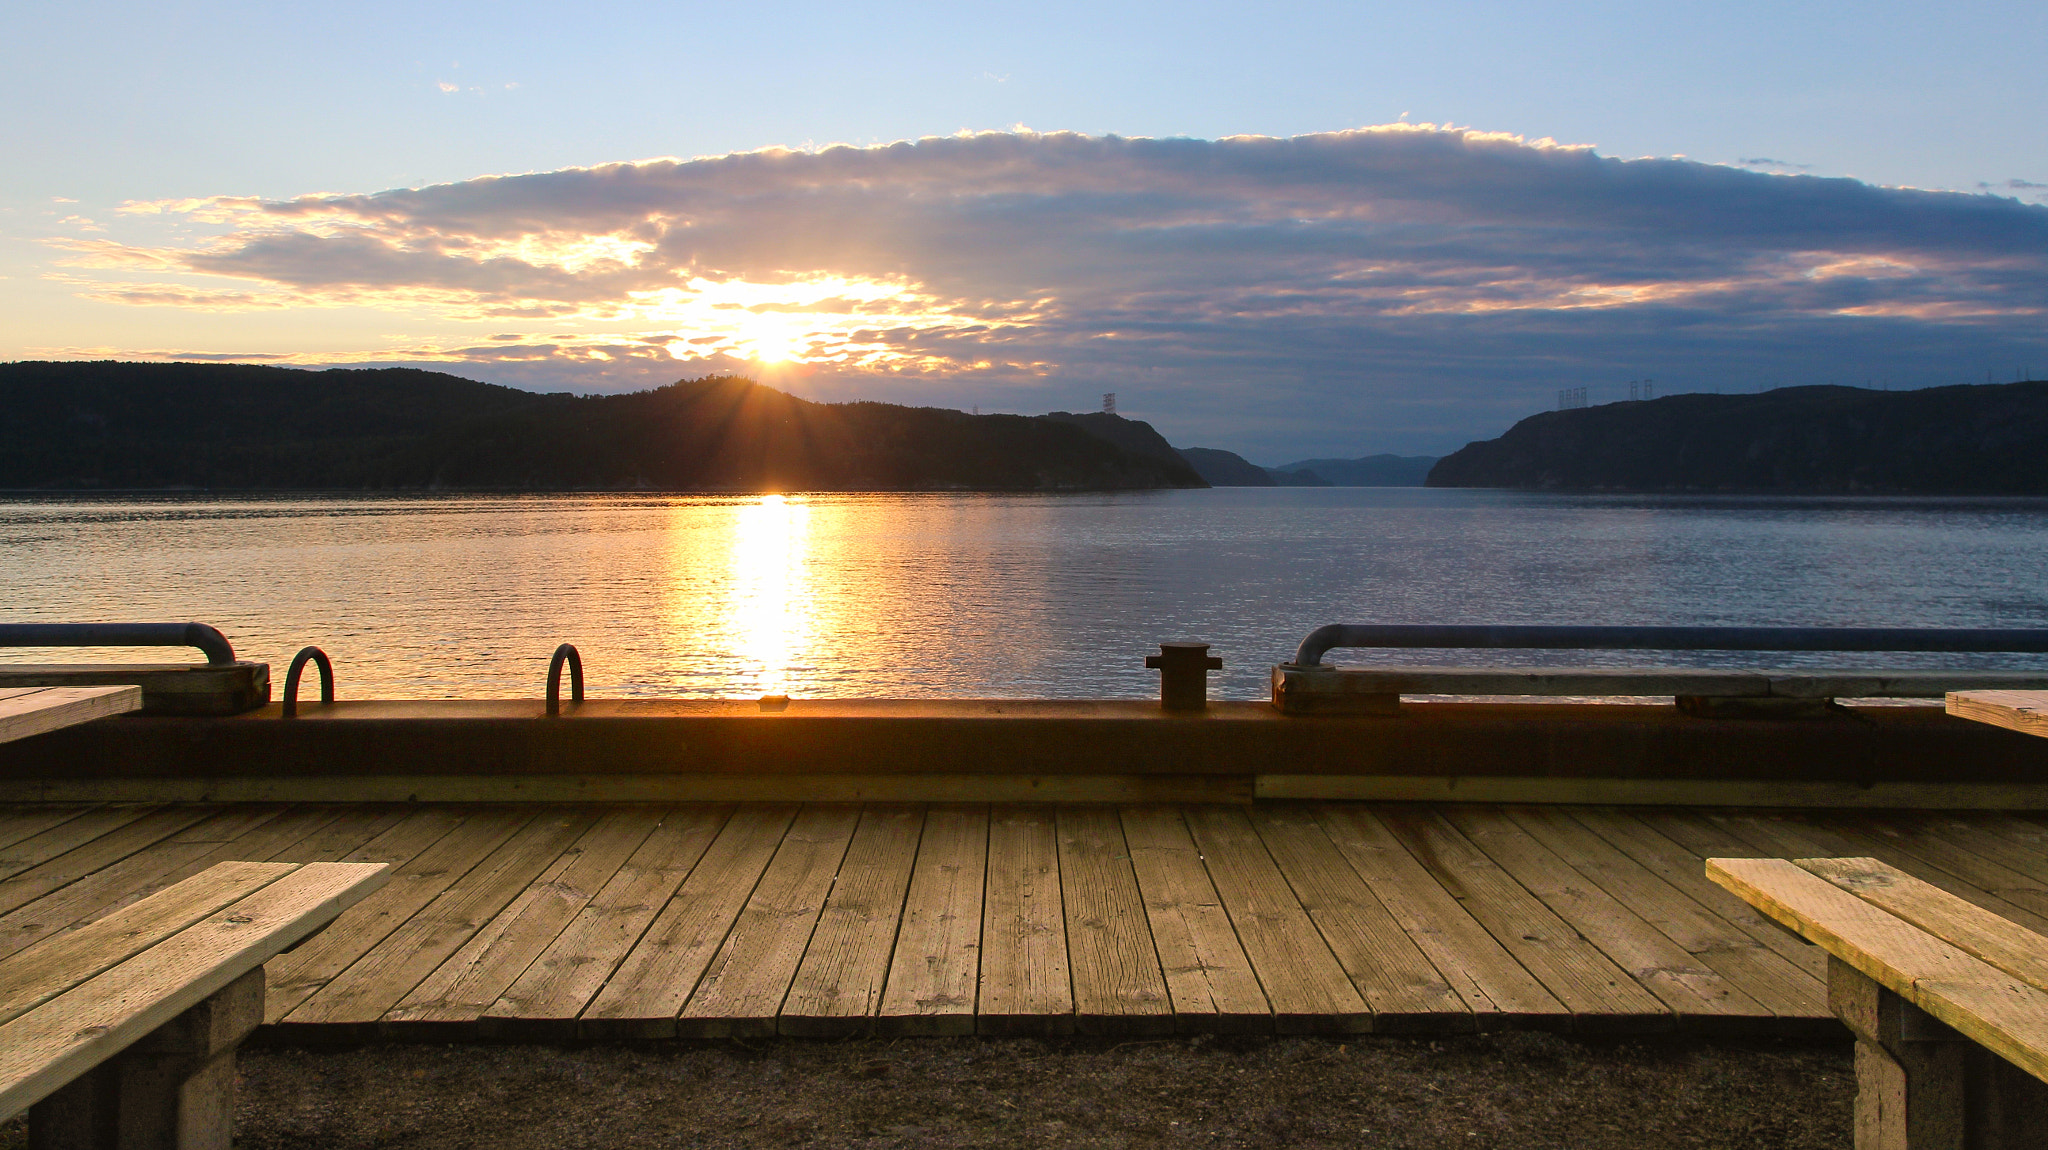 Canon EOS 600D (Rebel EOS T3i / EOS Kiss X5) sample photo. Coucher de soleil sur le fjord photography